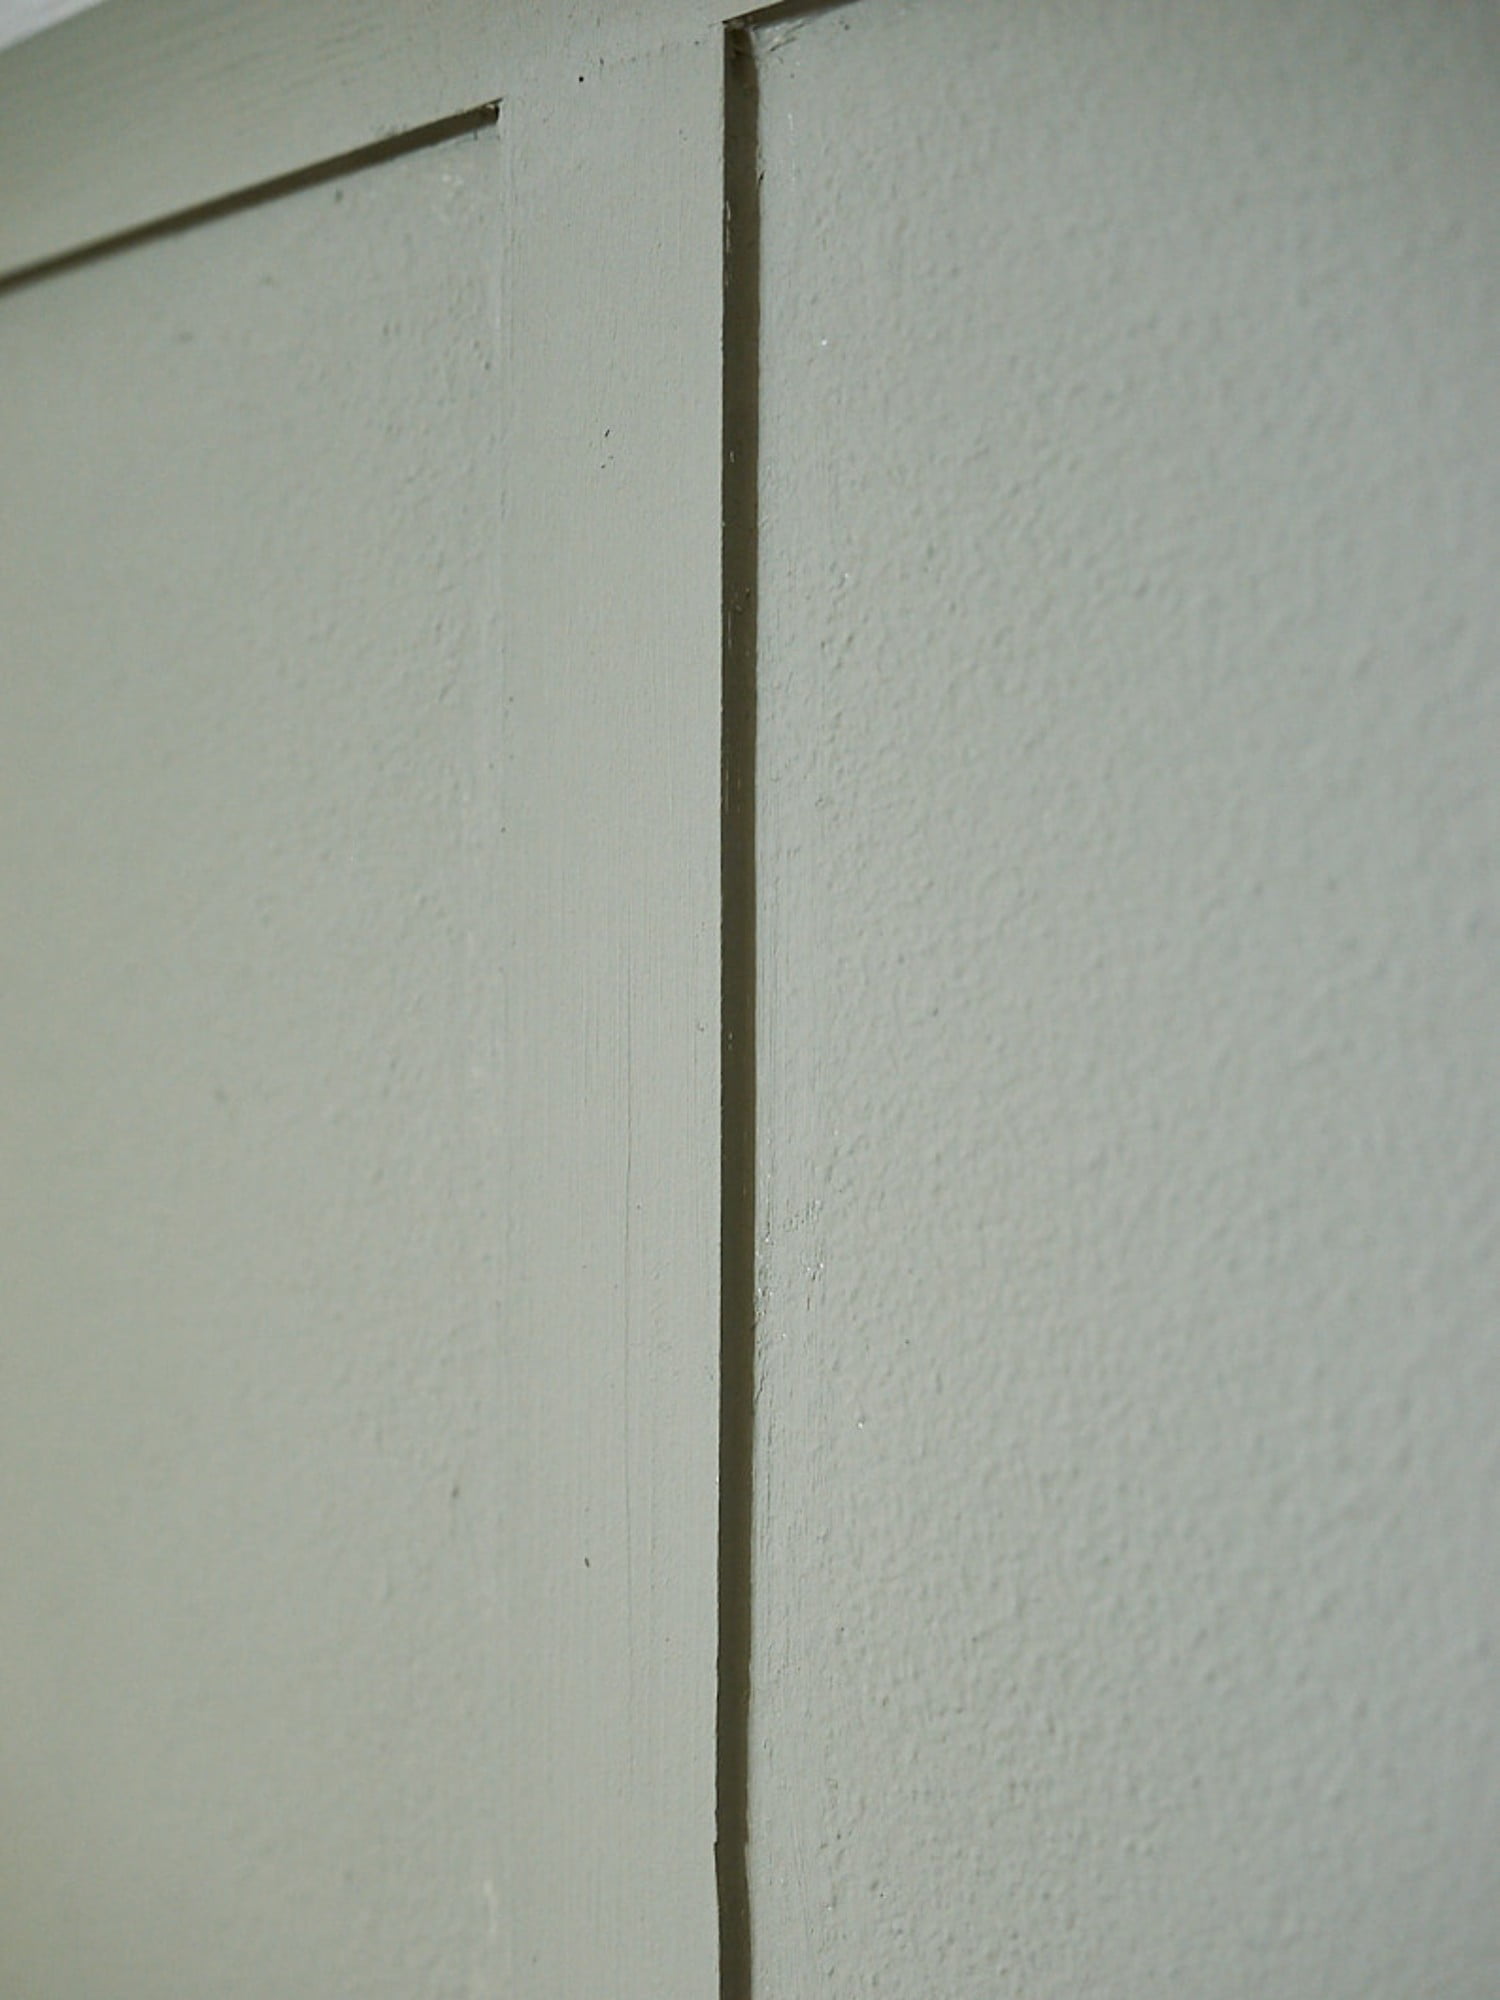 Po nanosu barve še bližnji pogled na steno, obloženo z letvicami.